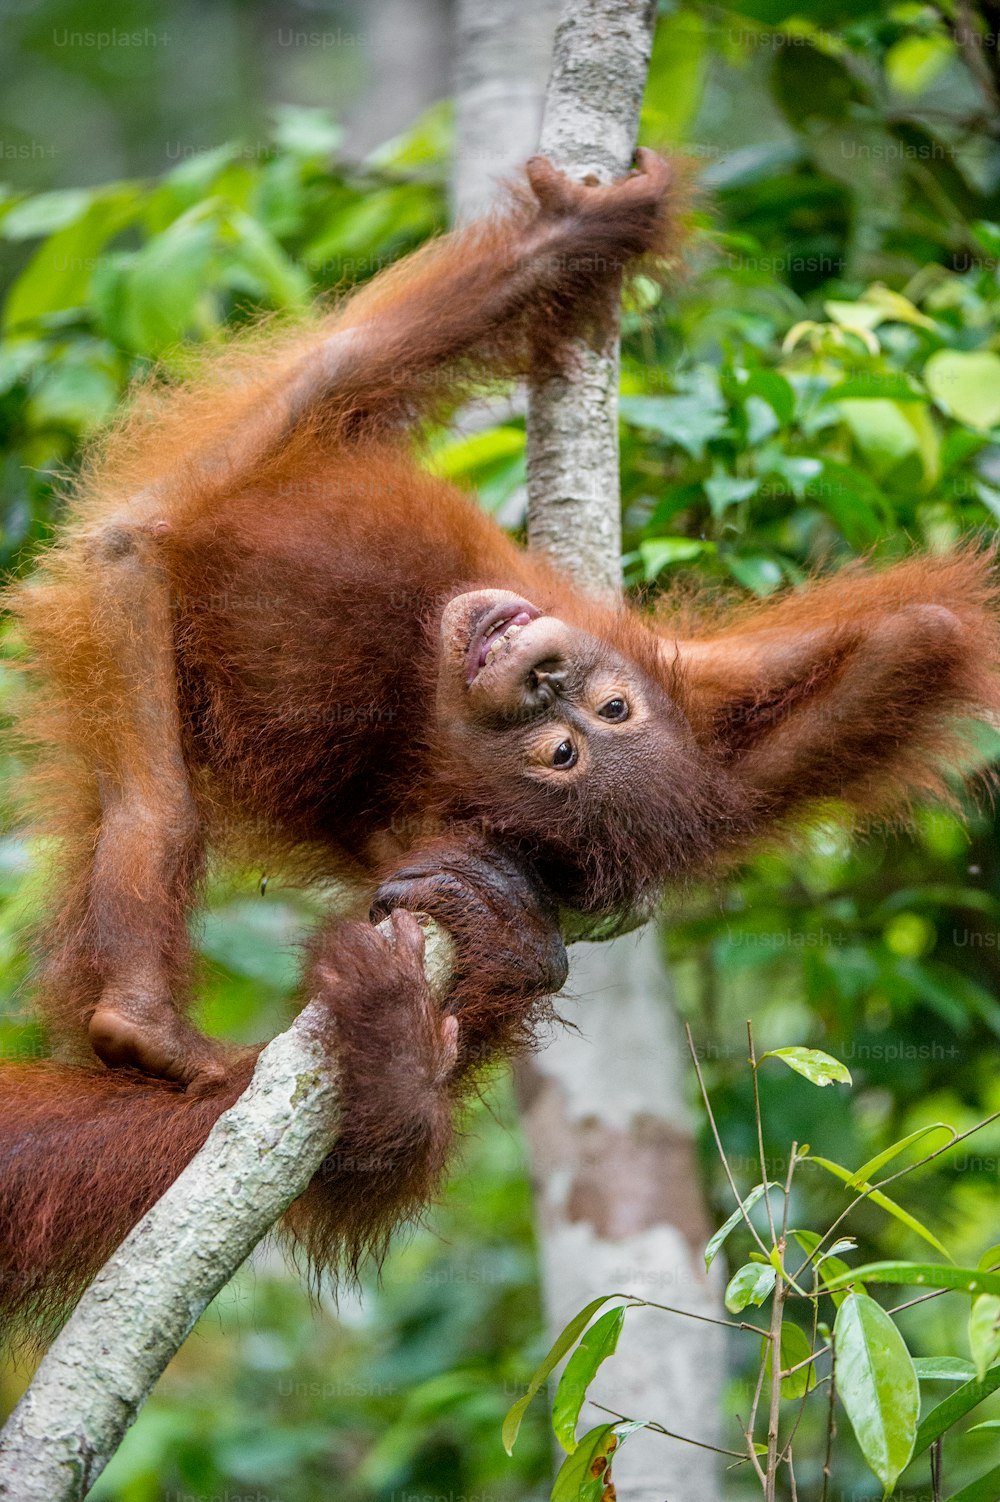 Cucciolo di orangtango in un habitat naturale. Orango del Borneo (Pongo pygmaeus wurmmbii) in natura selvaggia. Foresta pluviale dell'isola del Borneo. Indonesia.